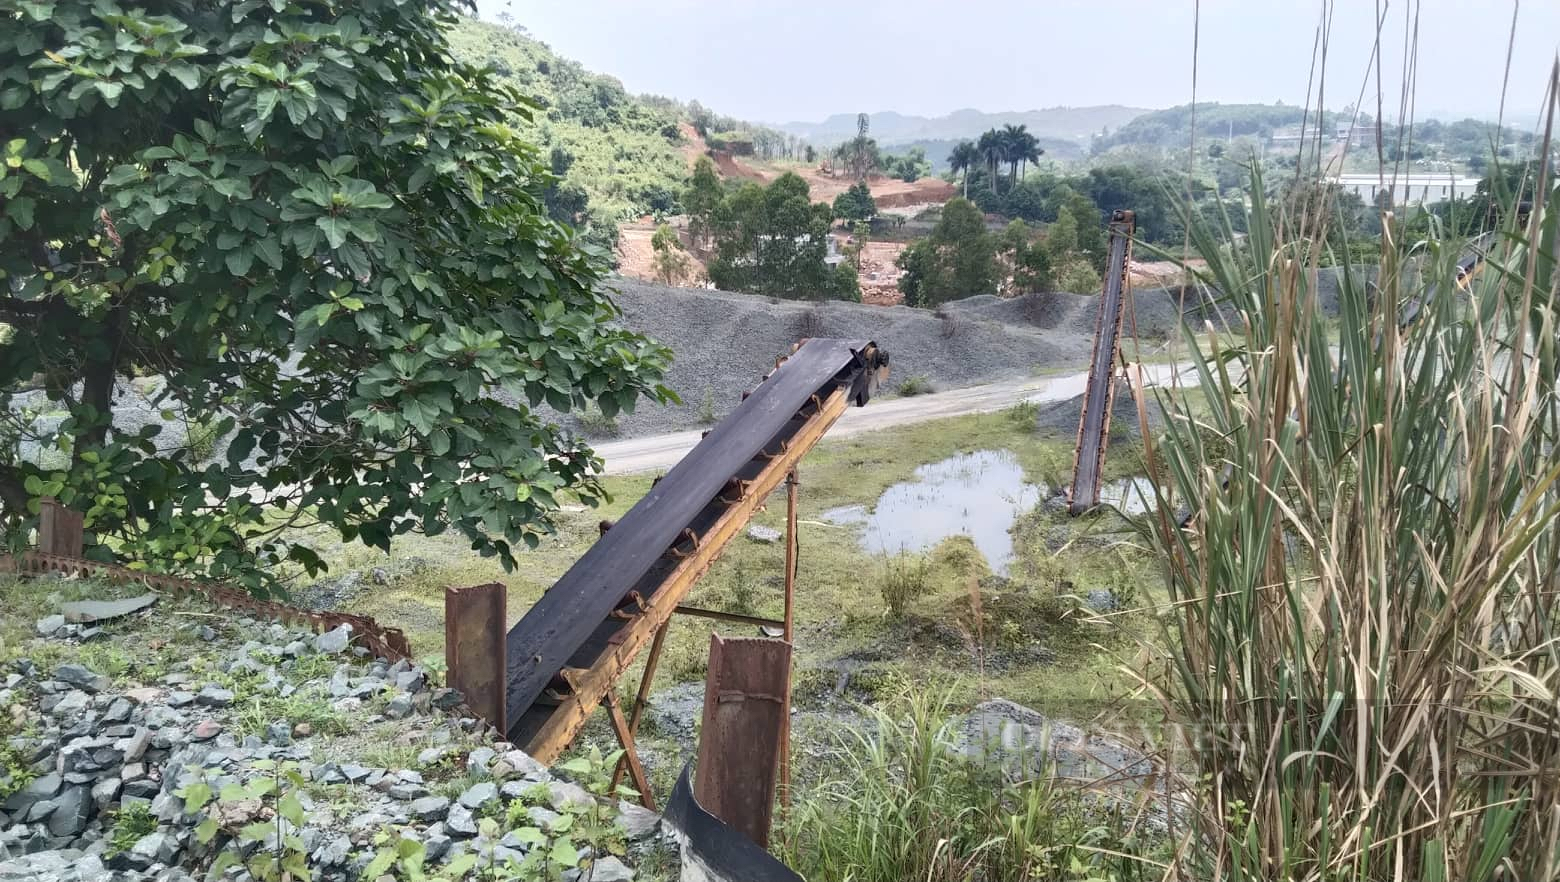 Hậu khai thác khoáng sản ở Hà Nội: Huyện Quốc Oai nêu rõ sai phạm của các ông chủ mỏ - Ảnh 5.